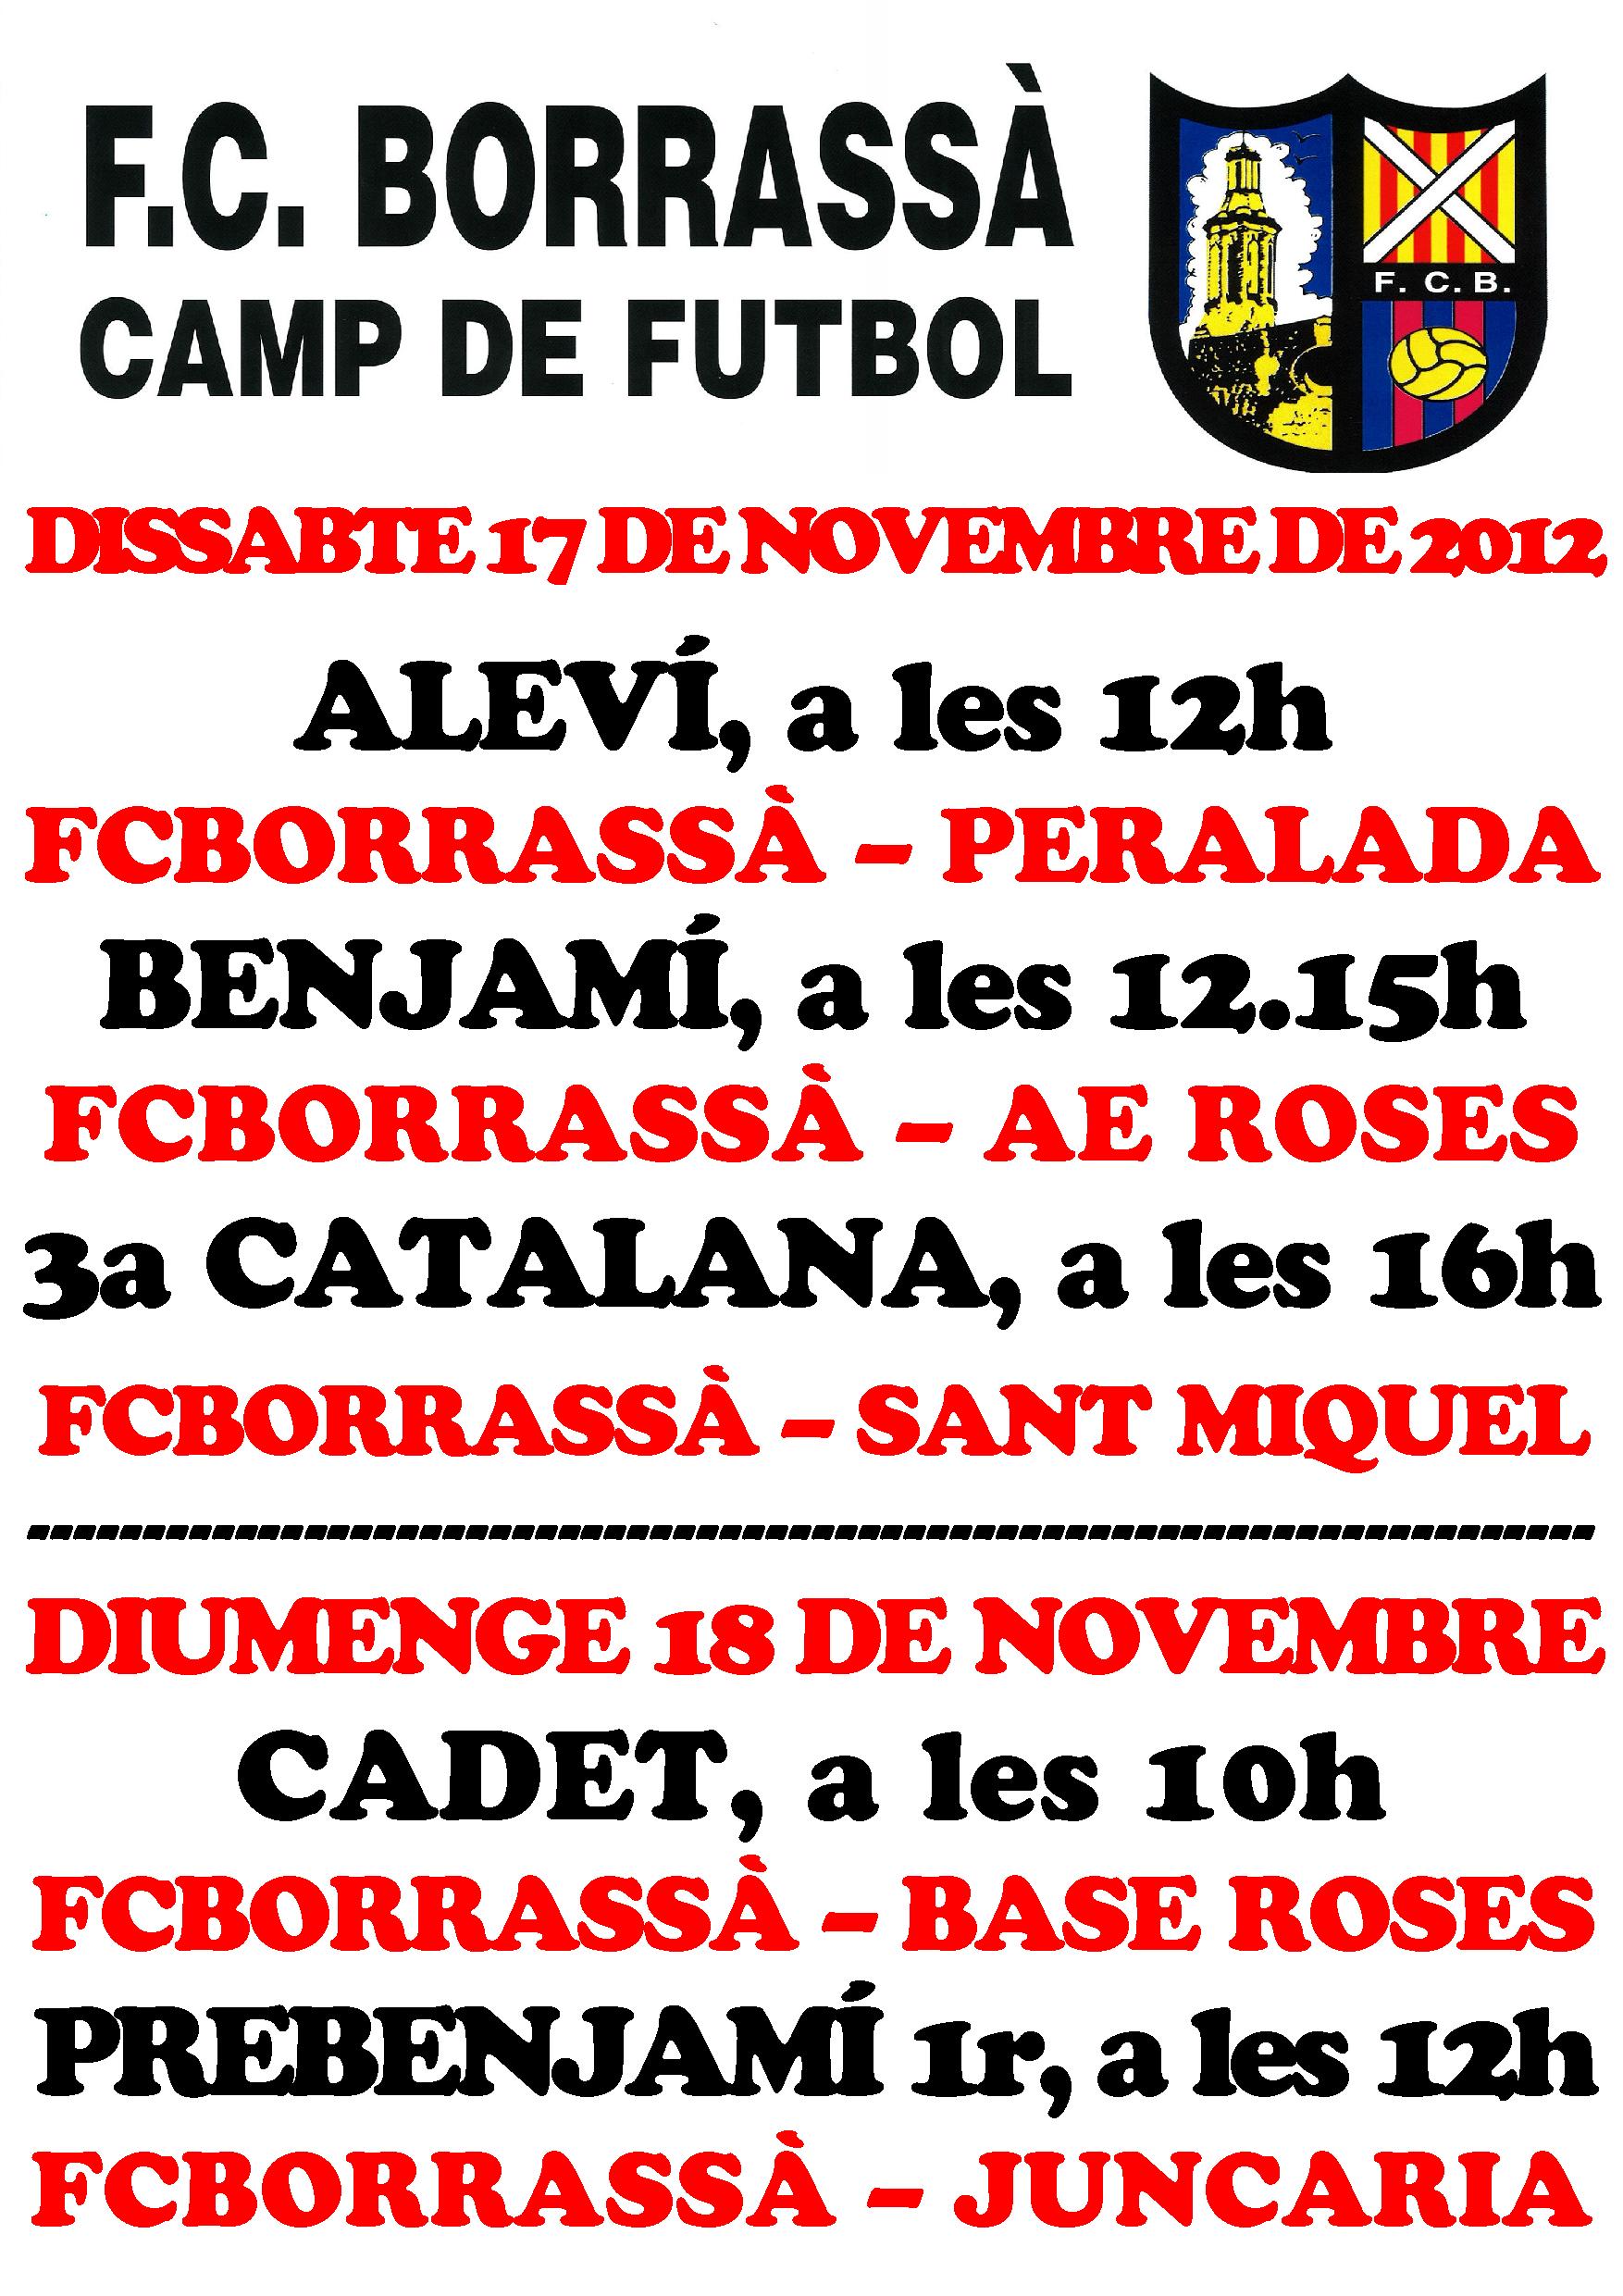 Els equips aleví, benjamí, 3a catalana, cadets i prebenjamins de primer any jugaran partits aquest cap de setmana al Camp d'Esports Municipal.